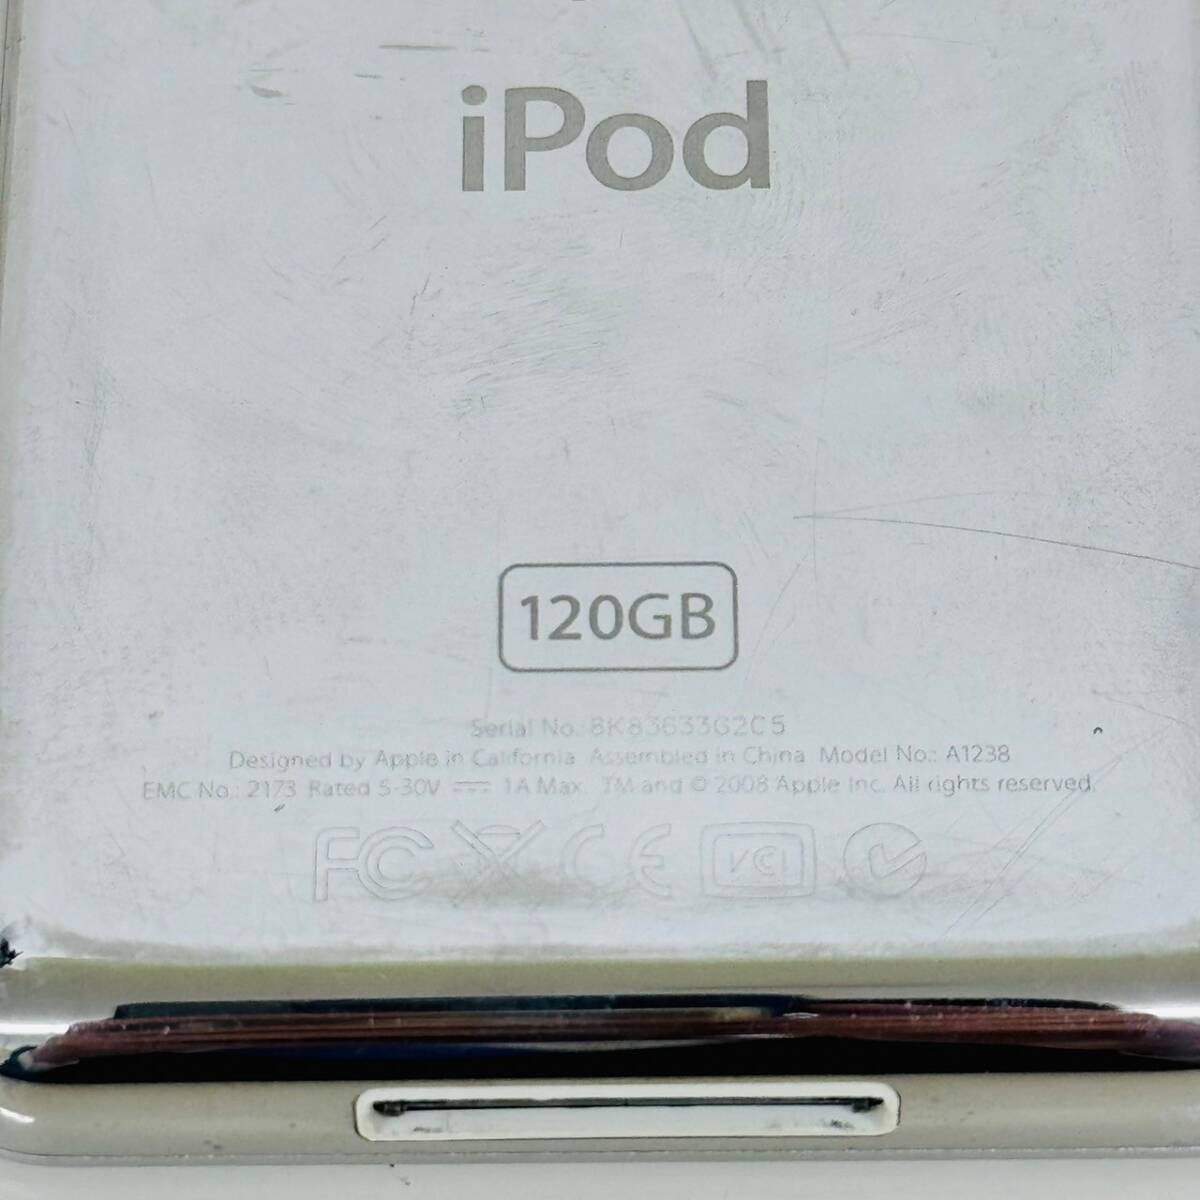 【IK-24275】 A1238 MB562J/A iPod classic 120GB Silver Apple アイポッド 4547597627686 ジャンク イヤフォン 音楽 小型家電 通電未確認_画像4